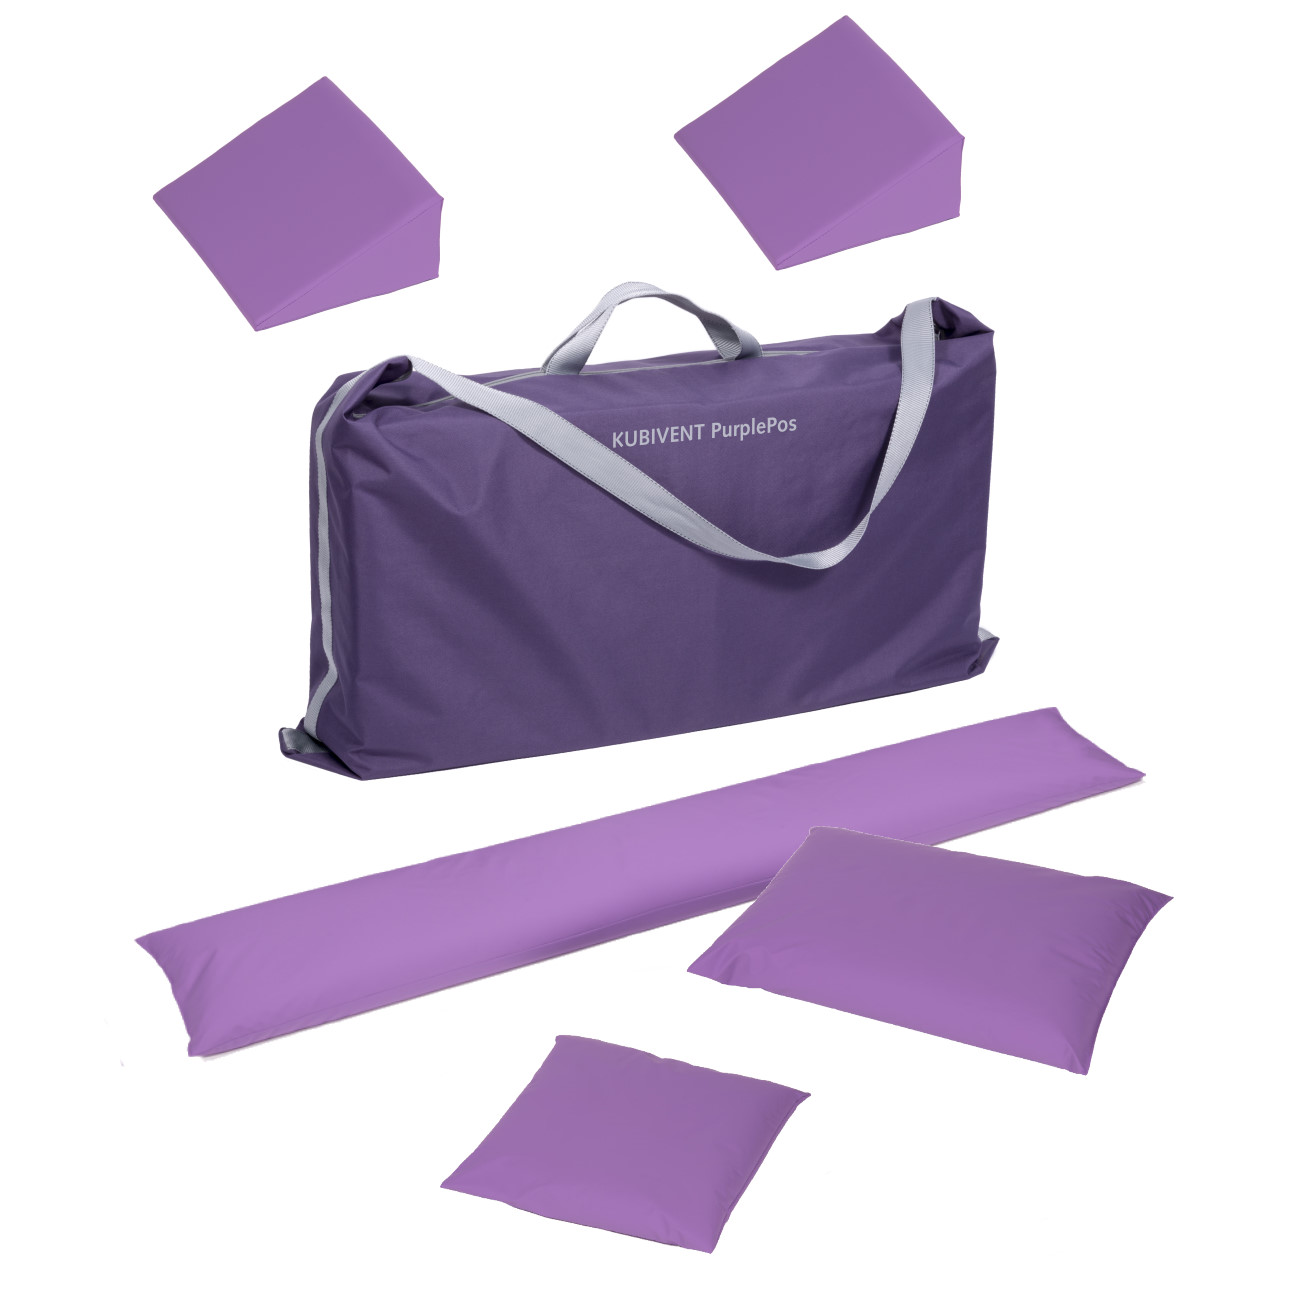 PurplePos Positionierungs-Set 2 | Lagerungsset | inkl. Tragetasche